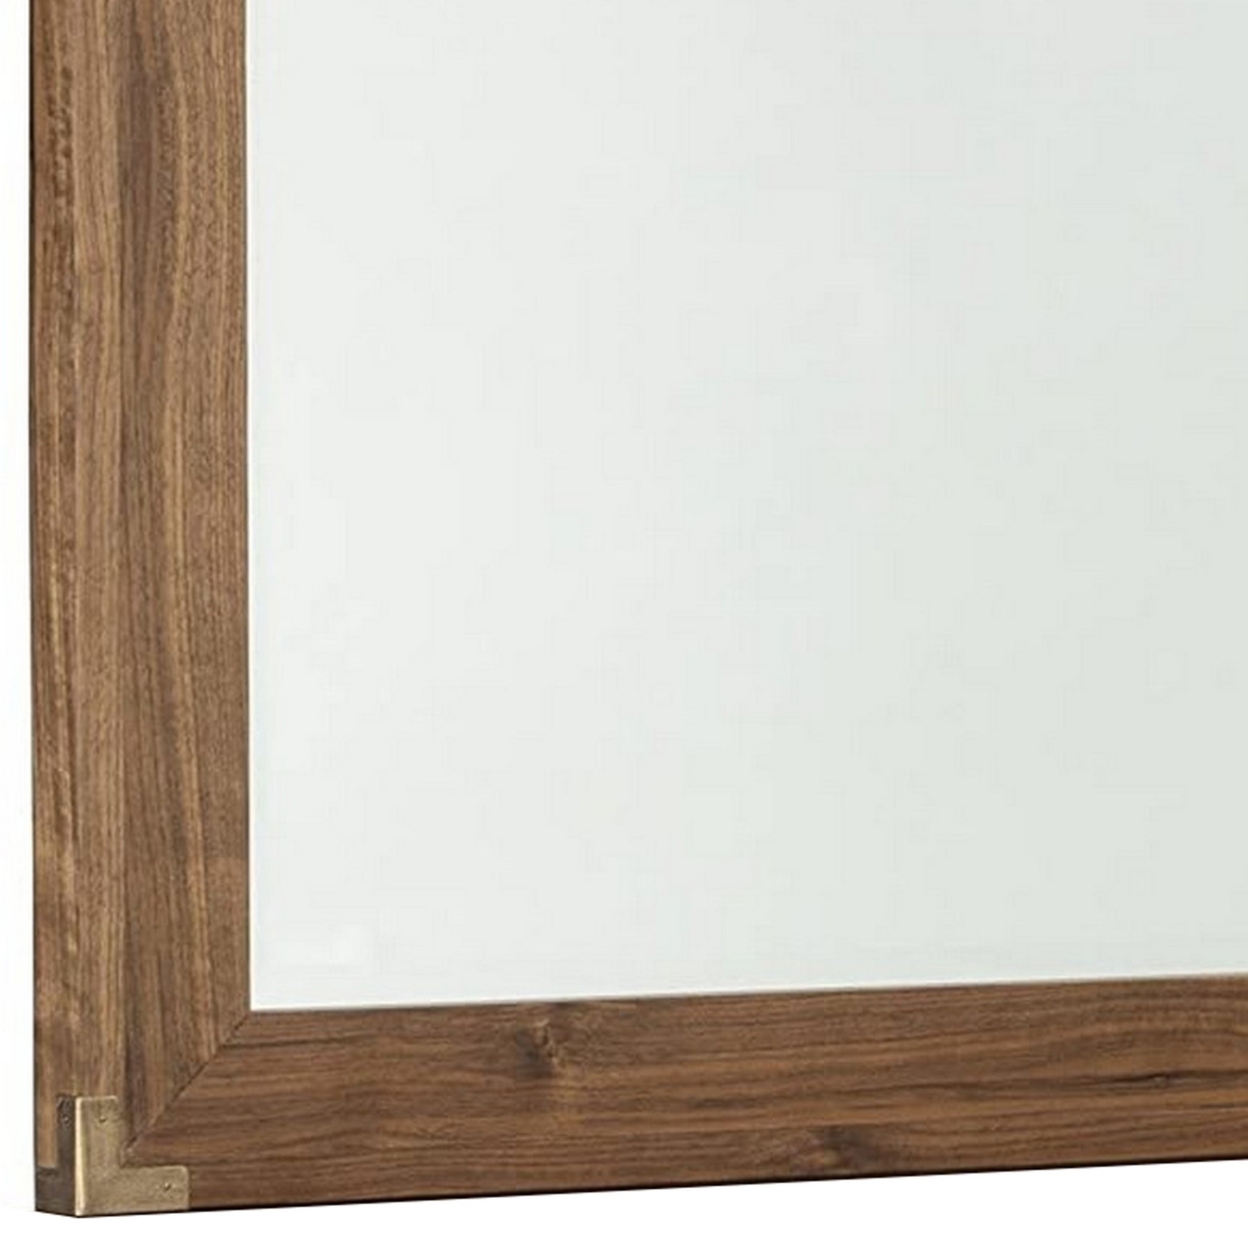 Rectangular Wooden Frame Mirror With Corner Brackets, Brown- Saltoro Sherpi